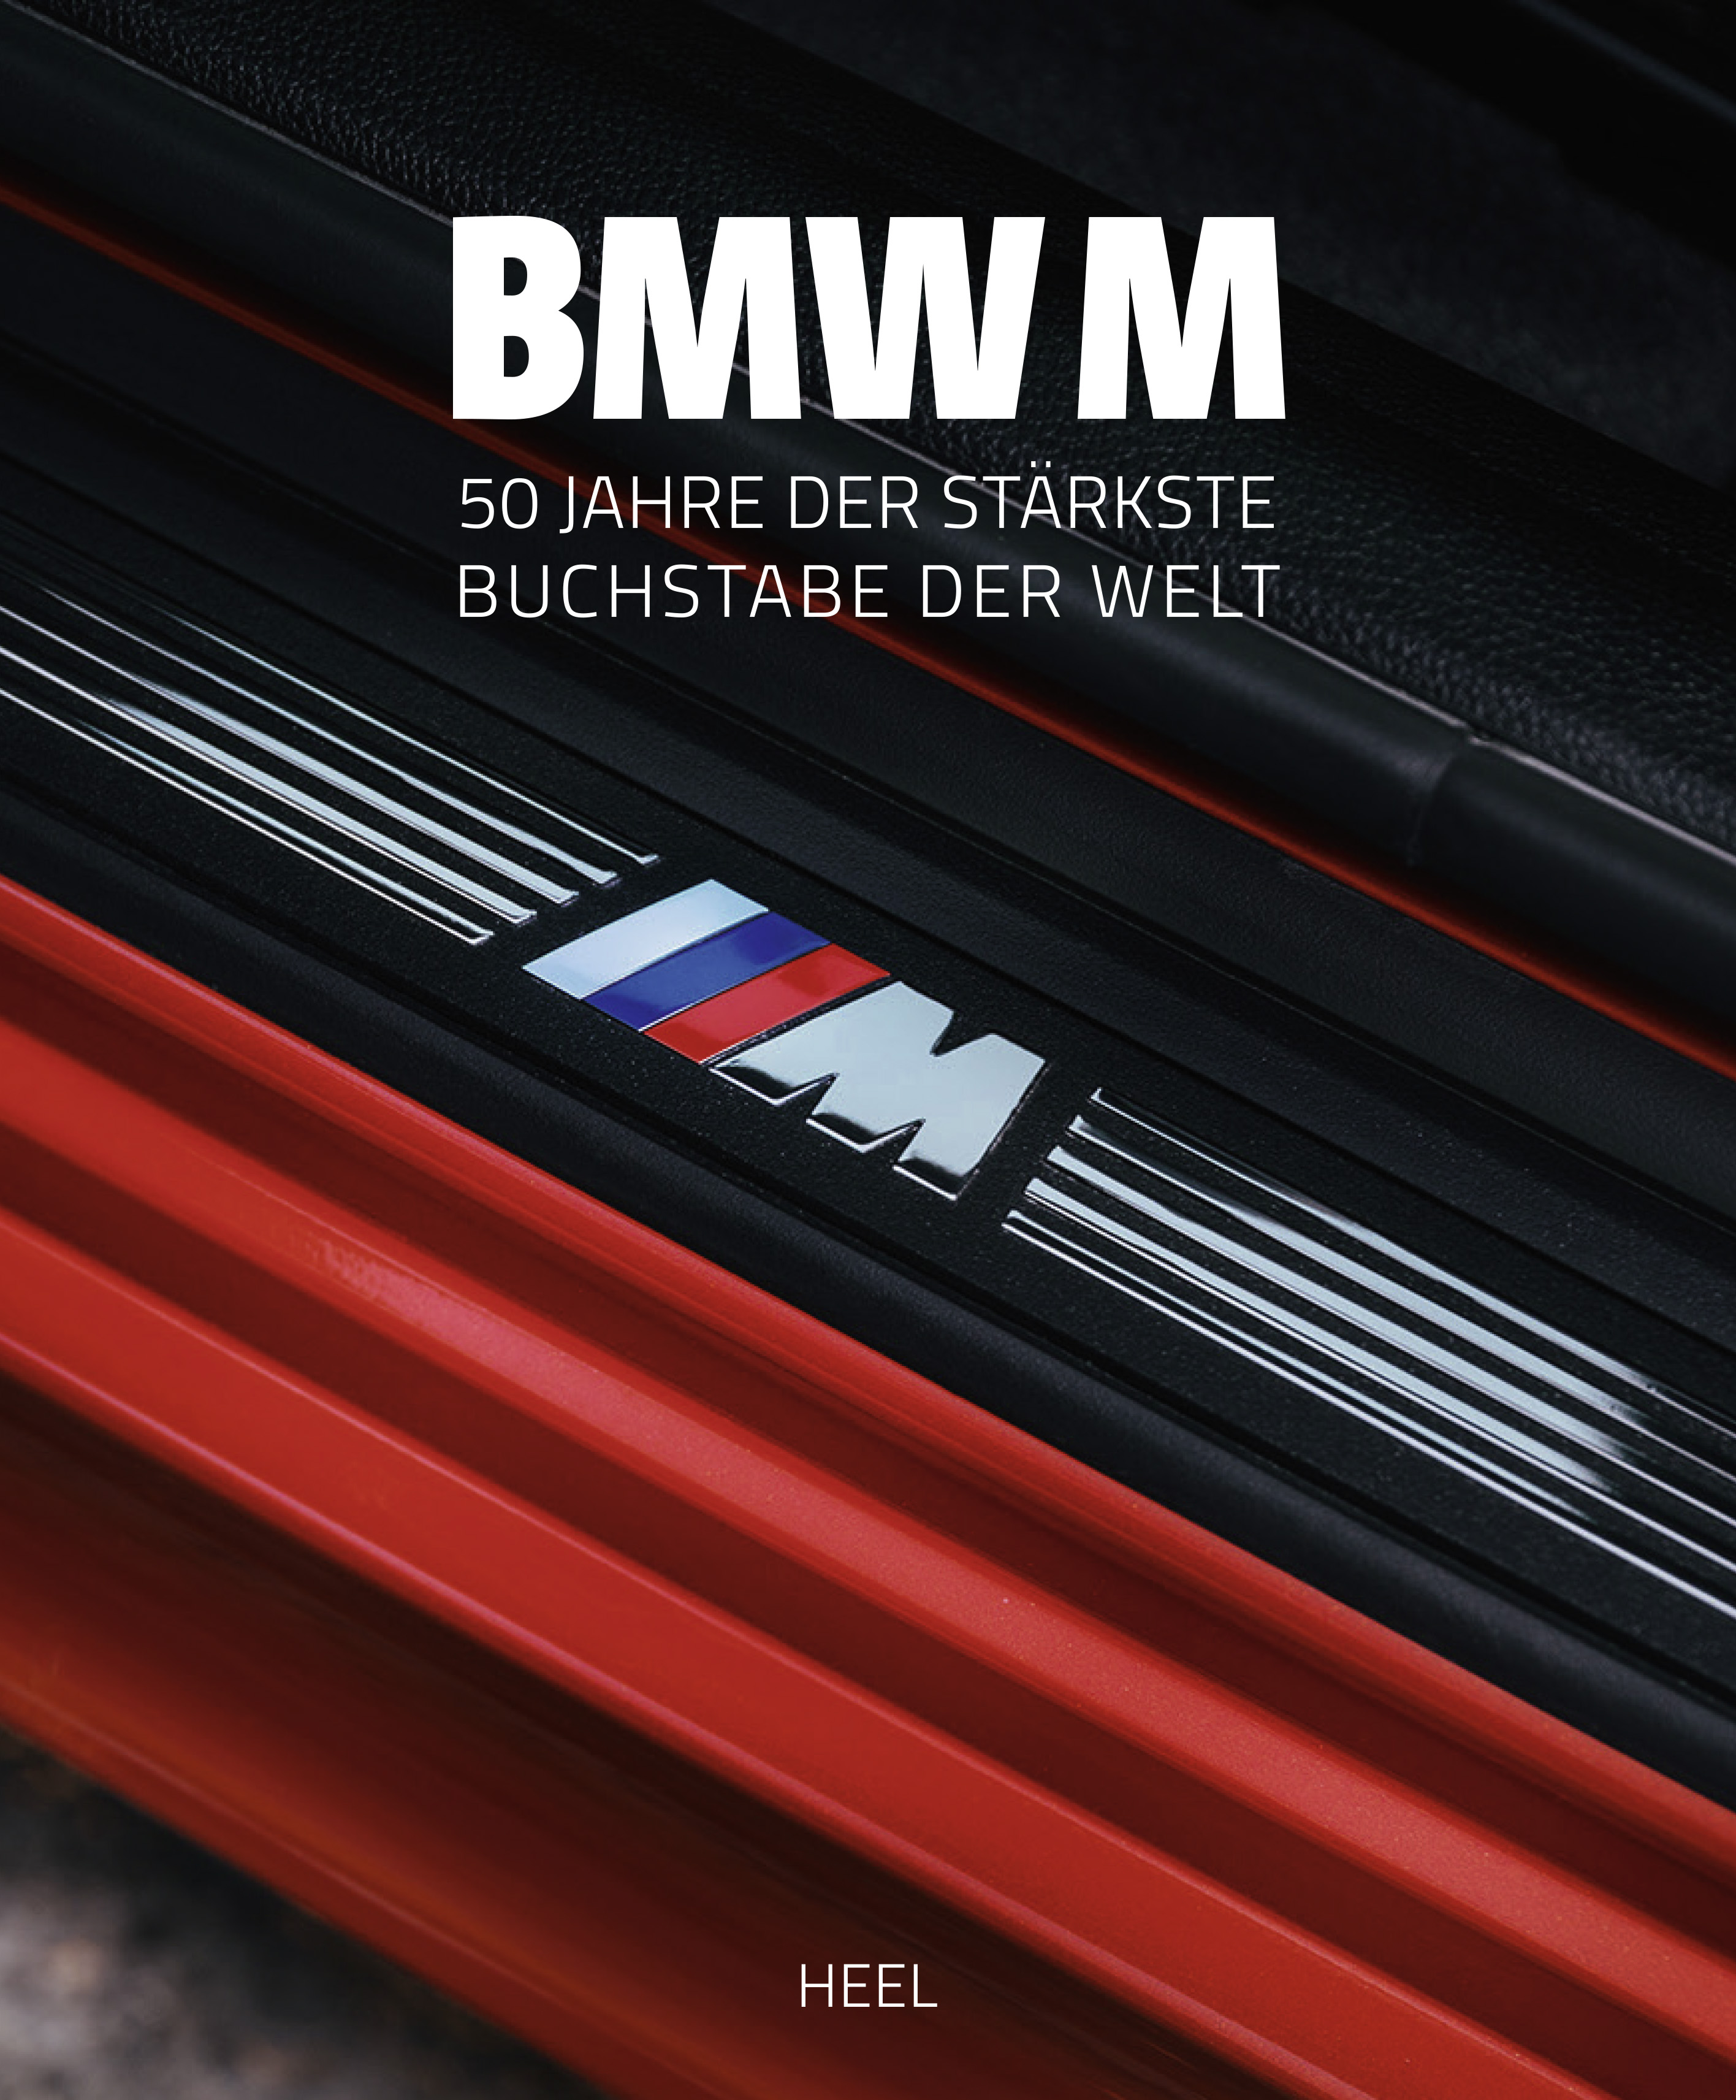 BMW M - Seit 50 Jahren der stärkste Buchstabe der Welt